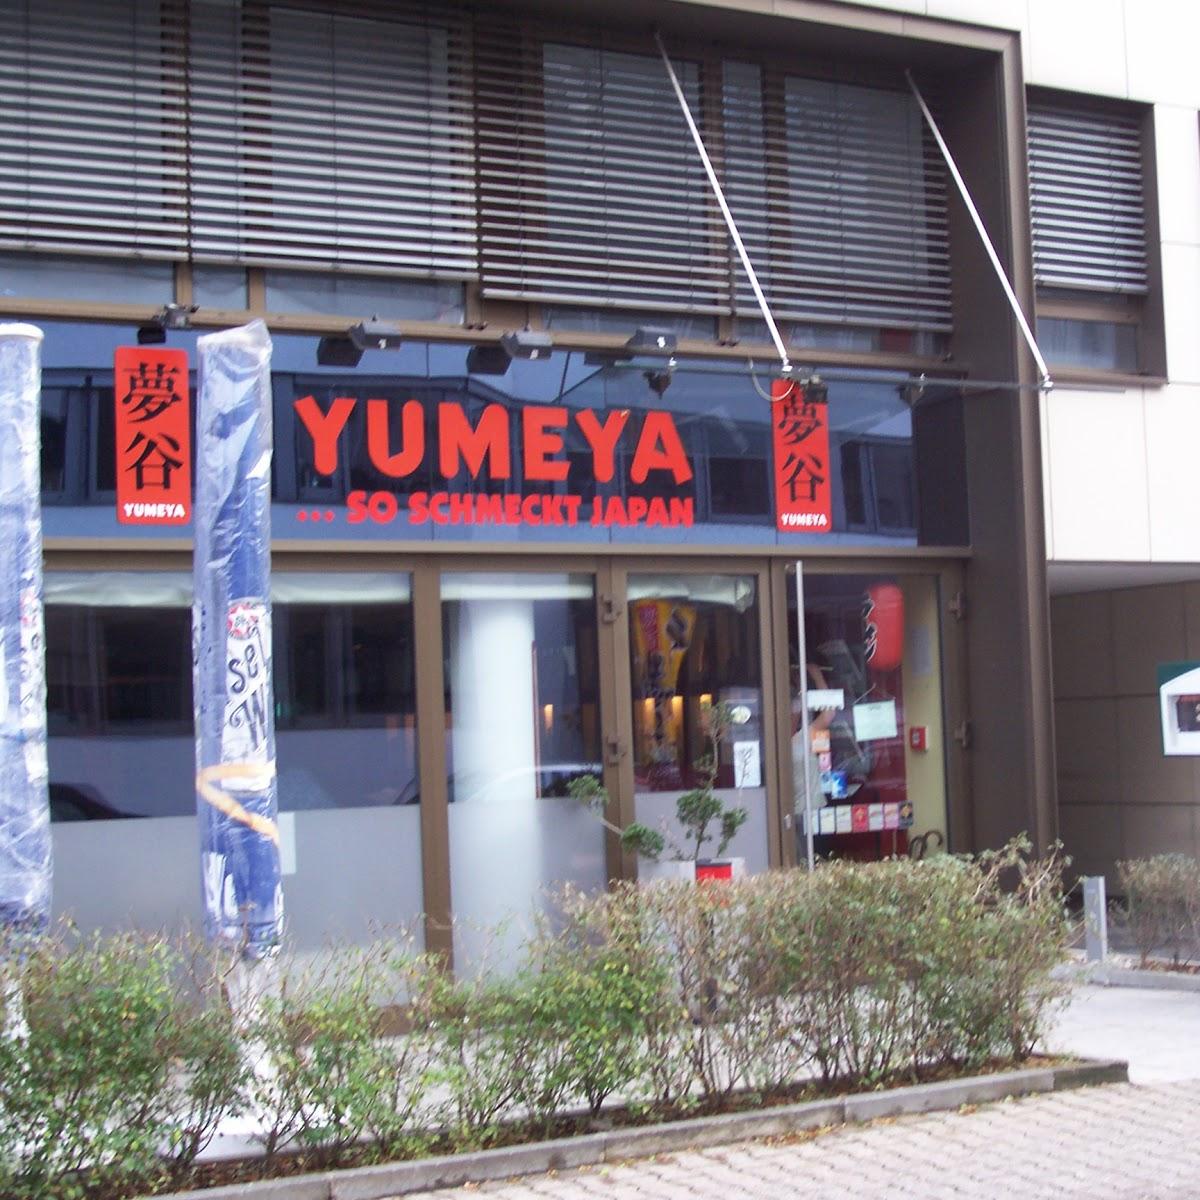 Restaurant "Yumeya So schmeckt Japan Japanisches Restaurant" in Frankfurt am Main